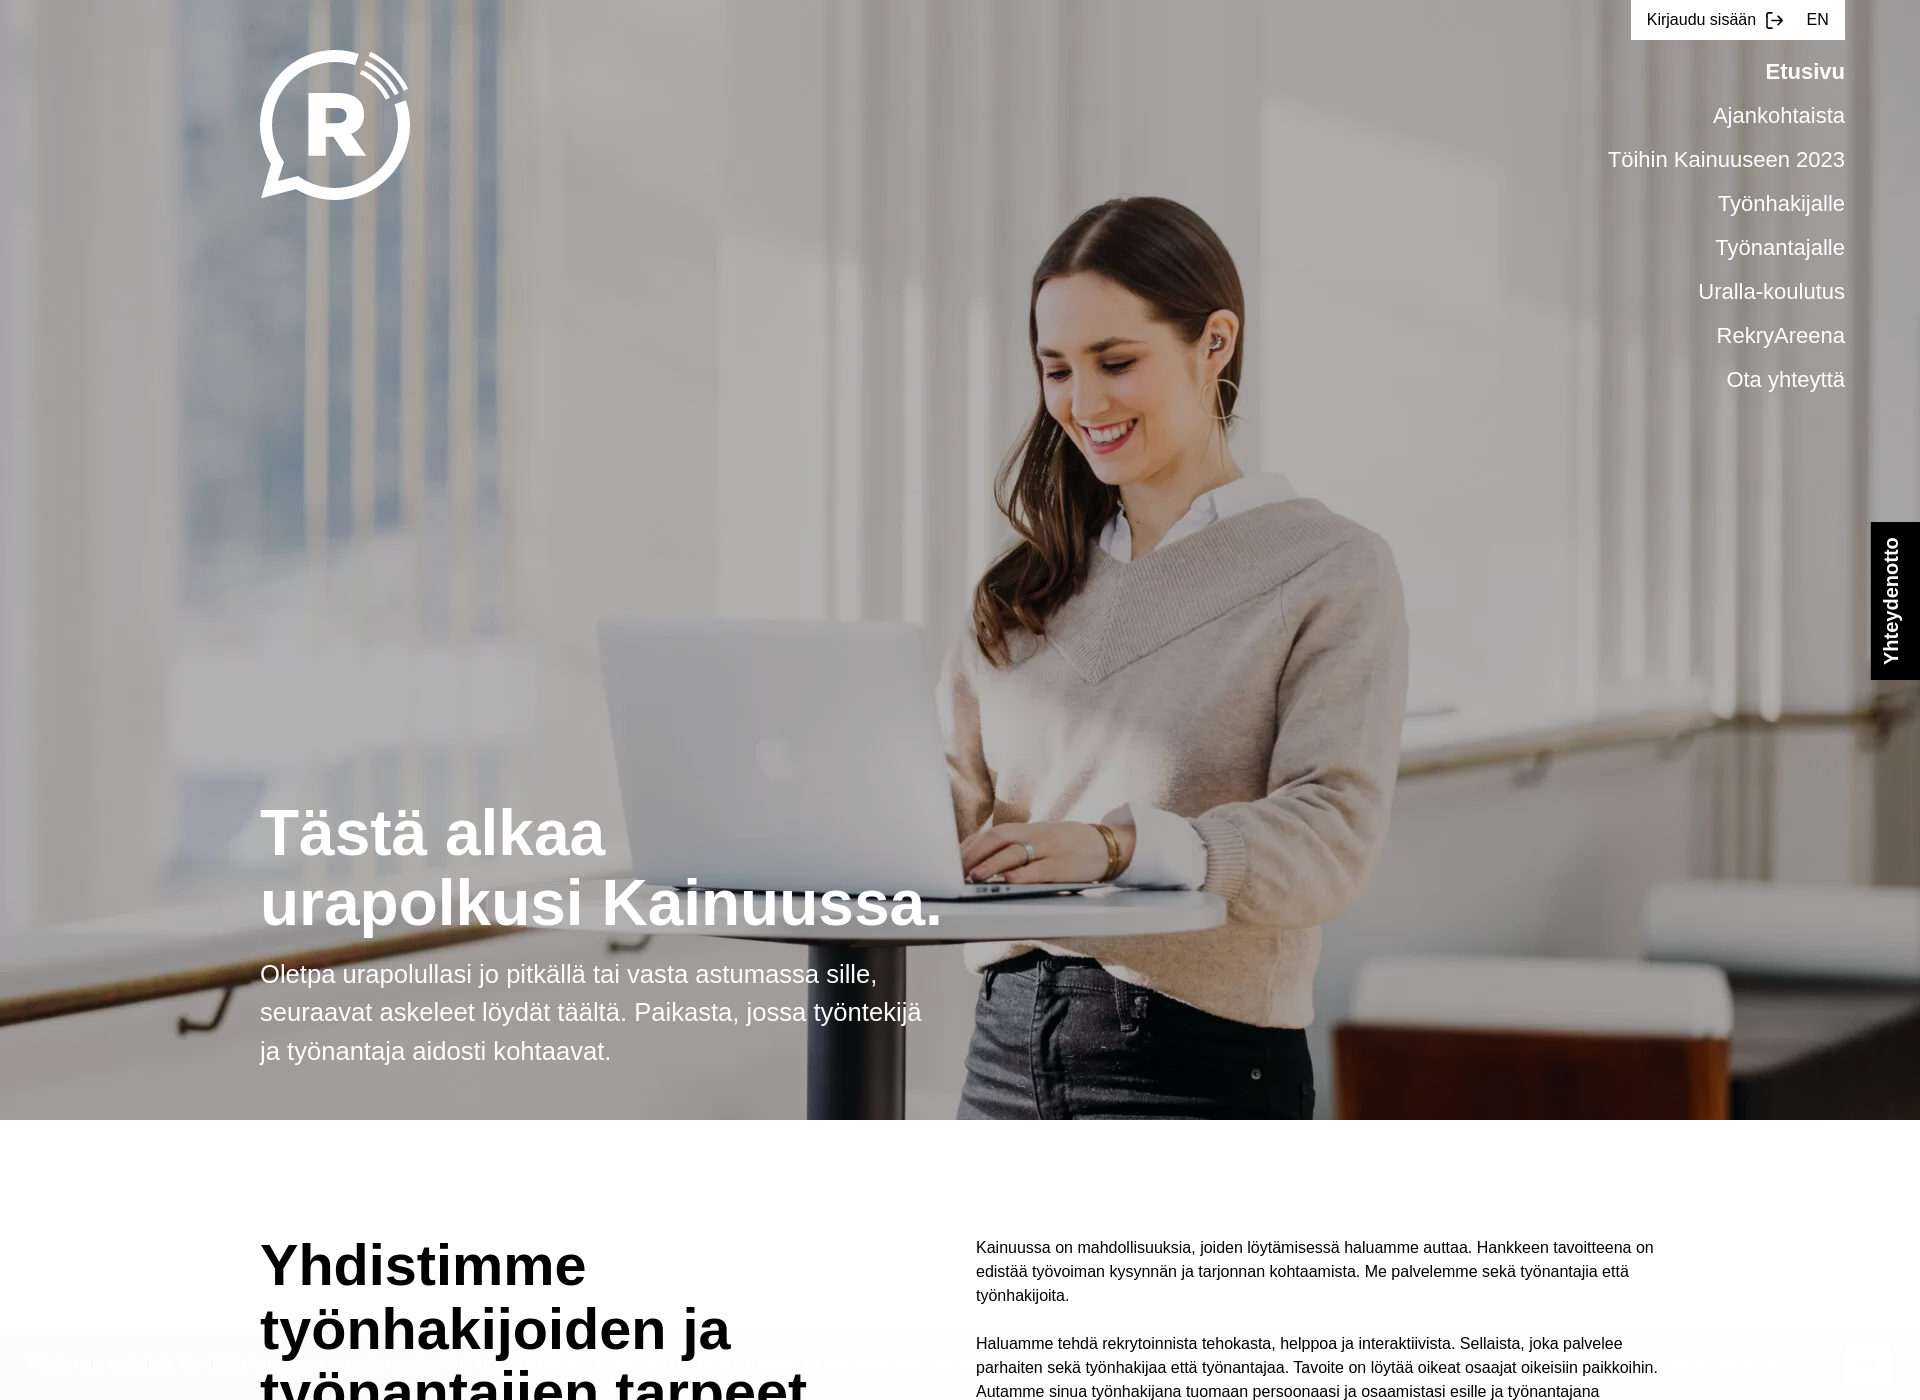 Skärmdump för rekrykainuu.fi